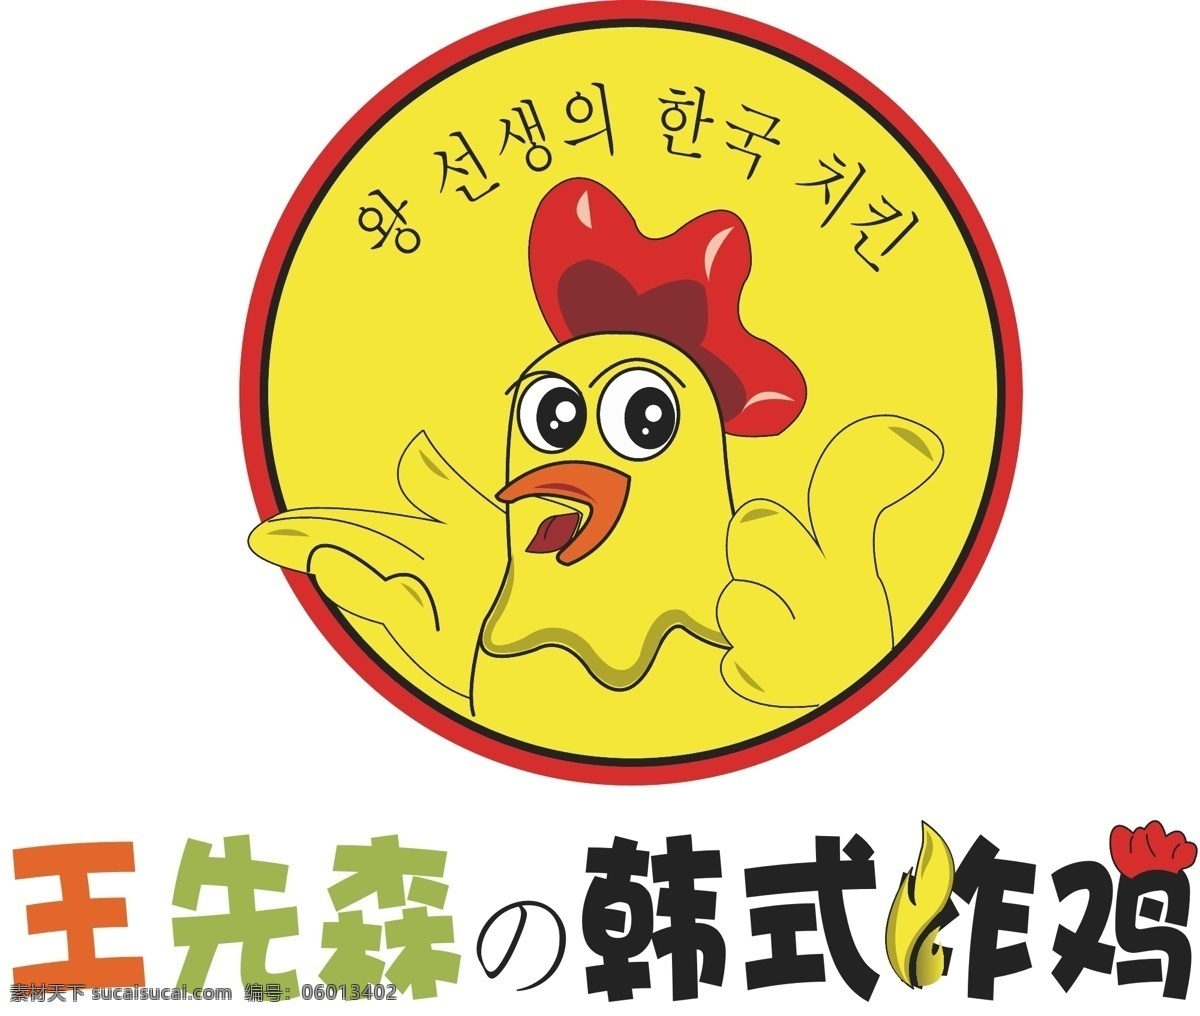 韩式 炸鸡 logo 矢量 logo设计 矢量图片 韩式炸鸡 矢量logo 标志图标 企业 标志